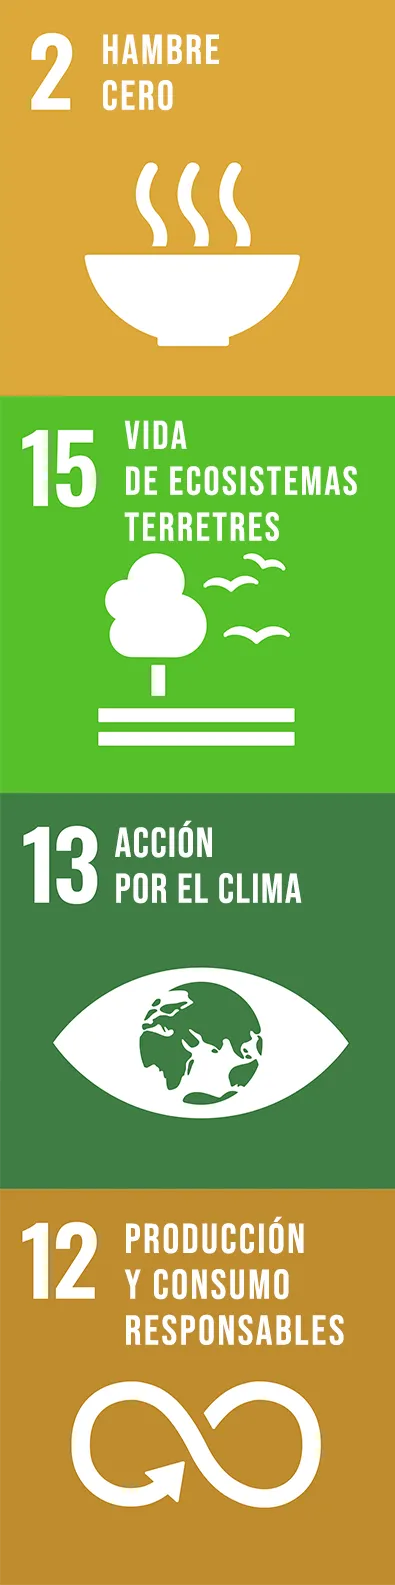 Objetivos de Desarrollo Sostenible de las Naciones Unidas en que Ascenza está trabajando: 2 -Hambre Cero, 15- Vida de ecosistemas terrestres, 13 - Acción por el clima y 12 - Producción y consumo responsables